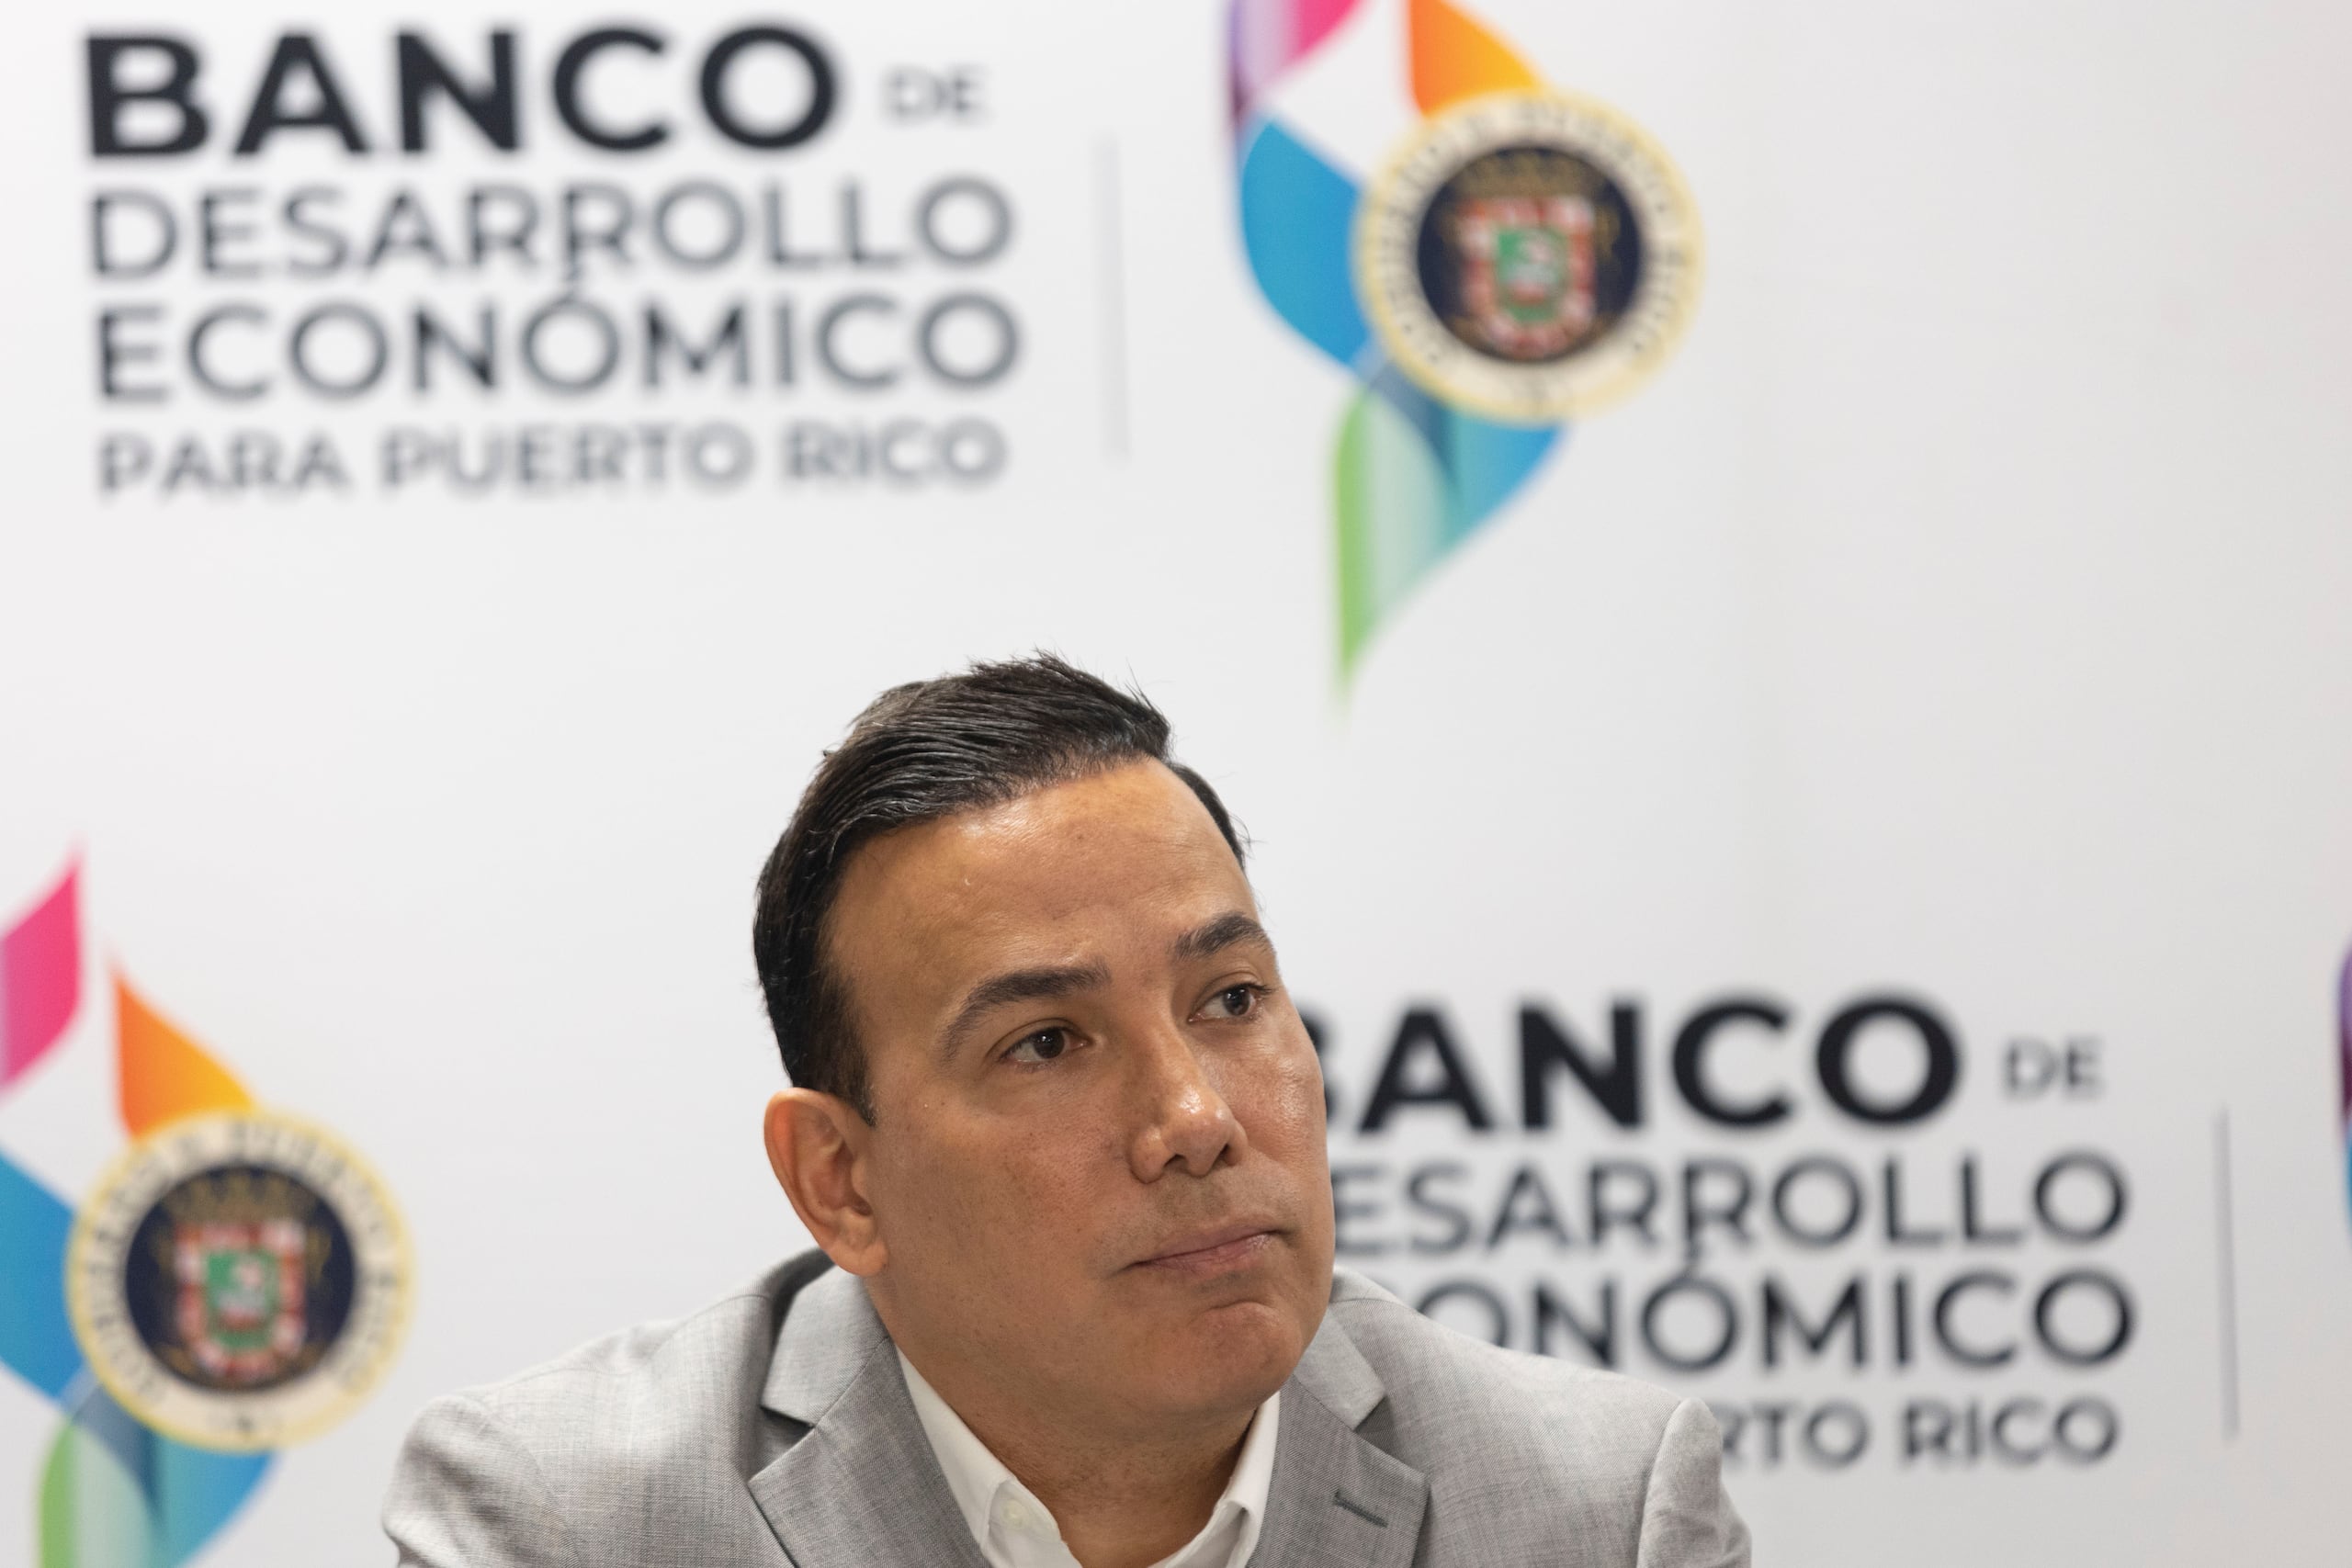 Presidente del Banco de Desarrollo Económico, Luis Alemañy González.